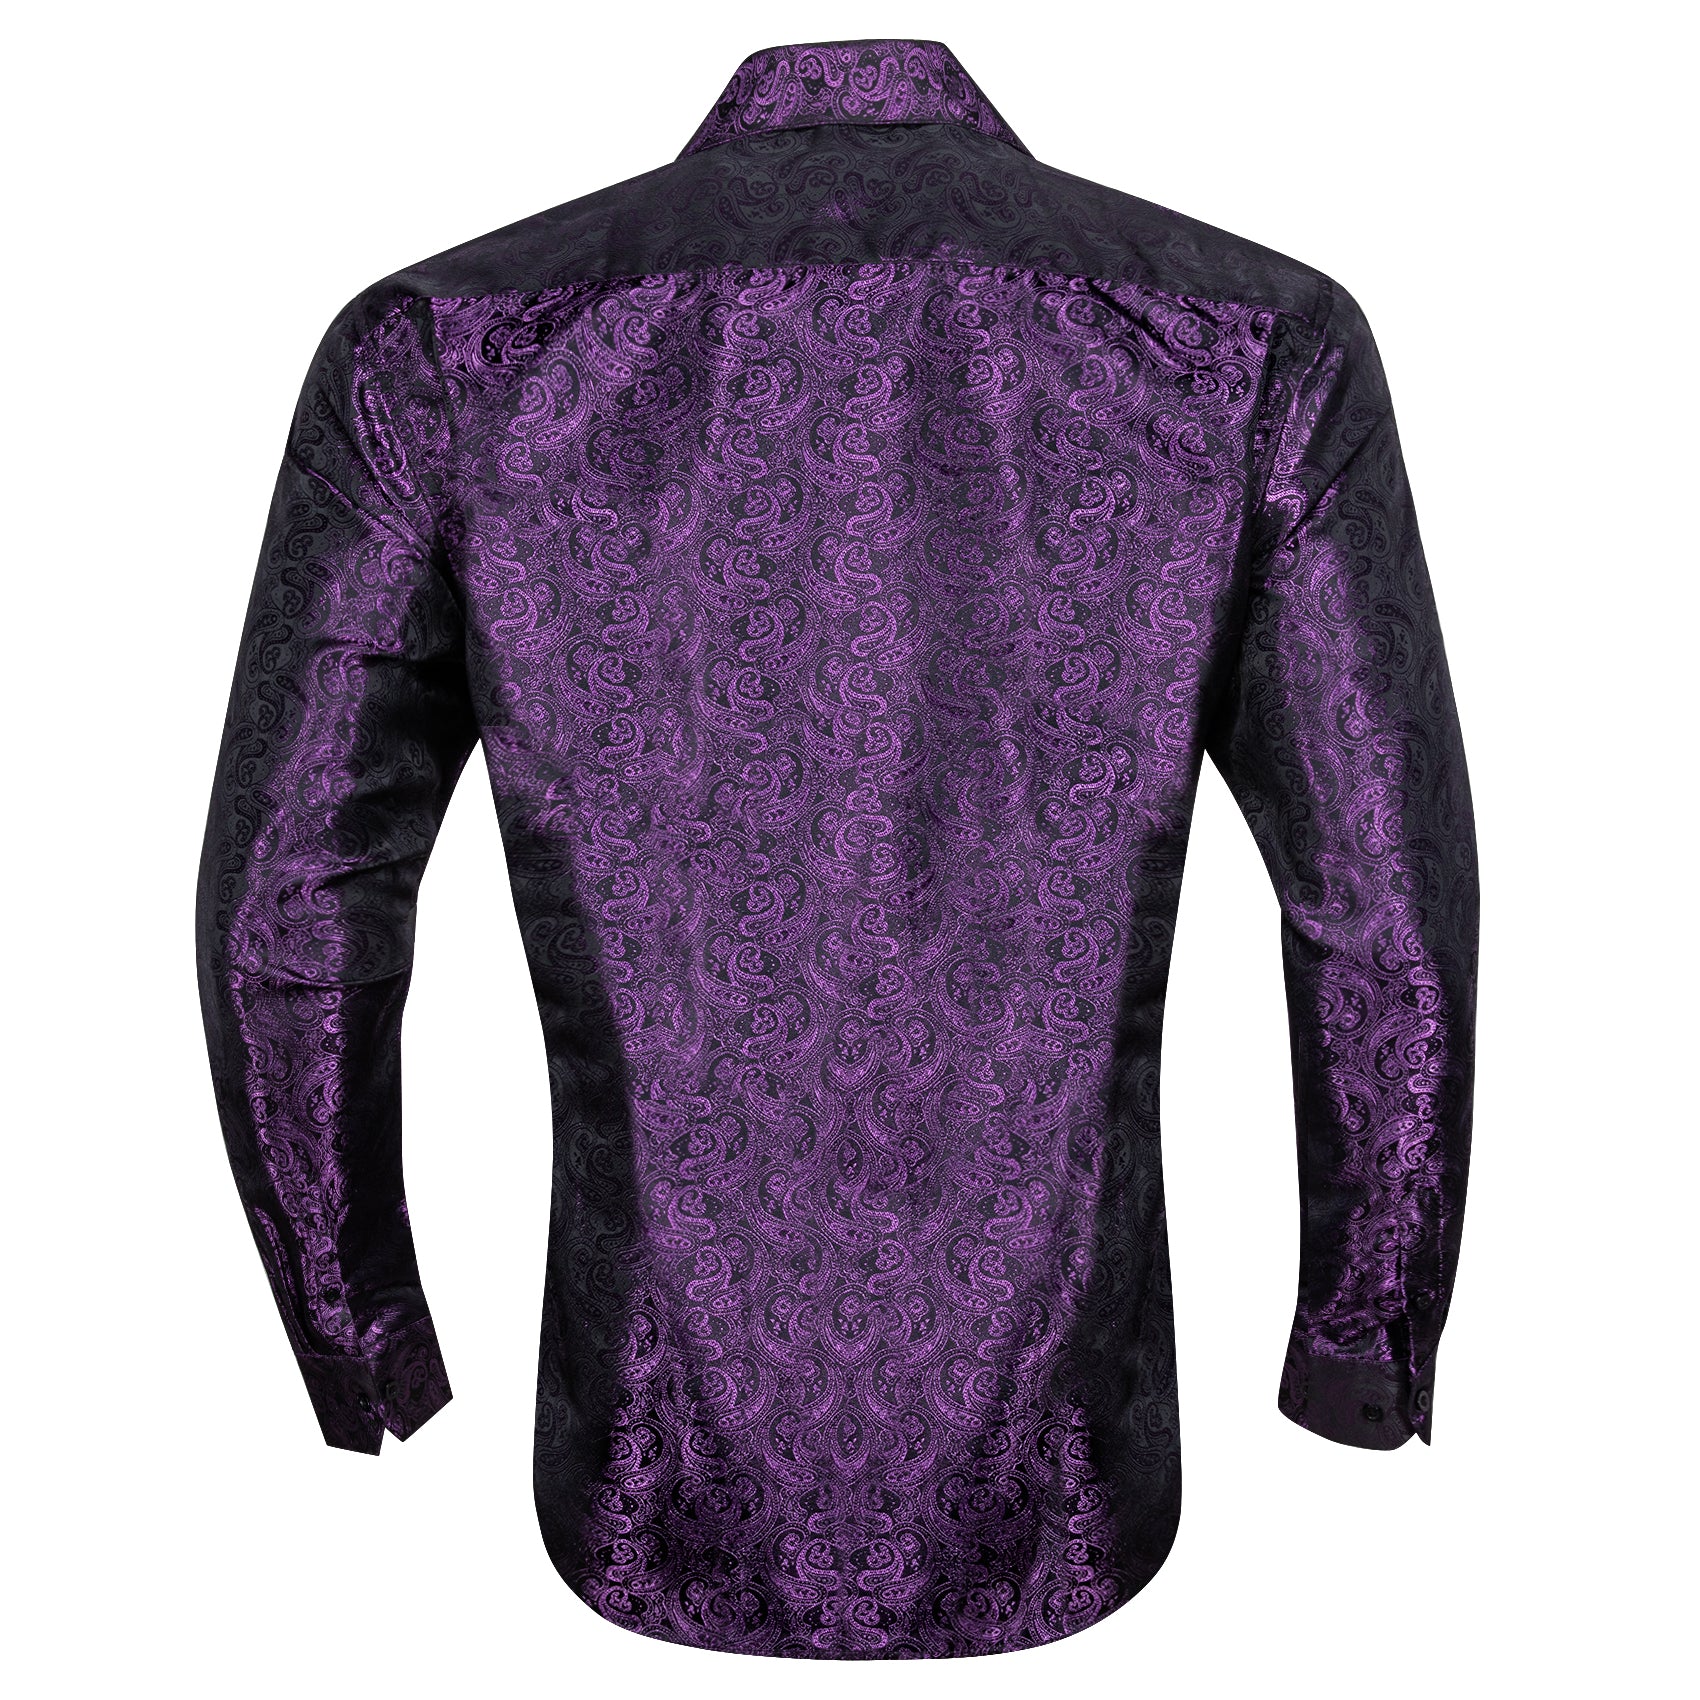 Barry.wang Luxury Amaranth Purpley Paisle Silk Shirt